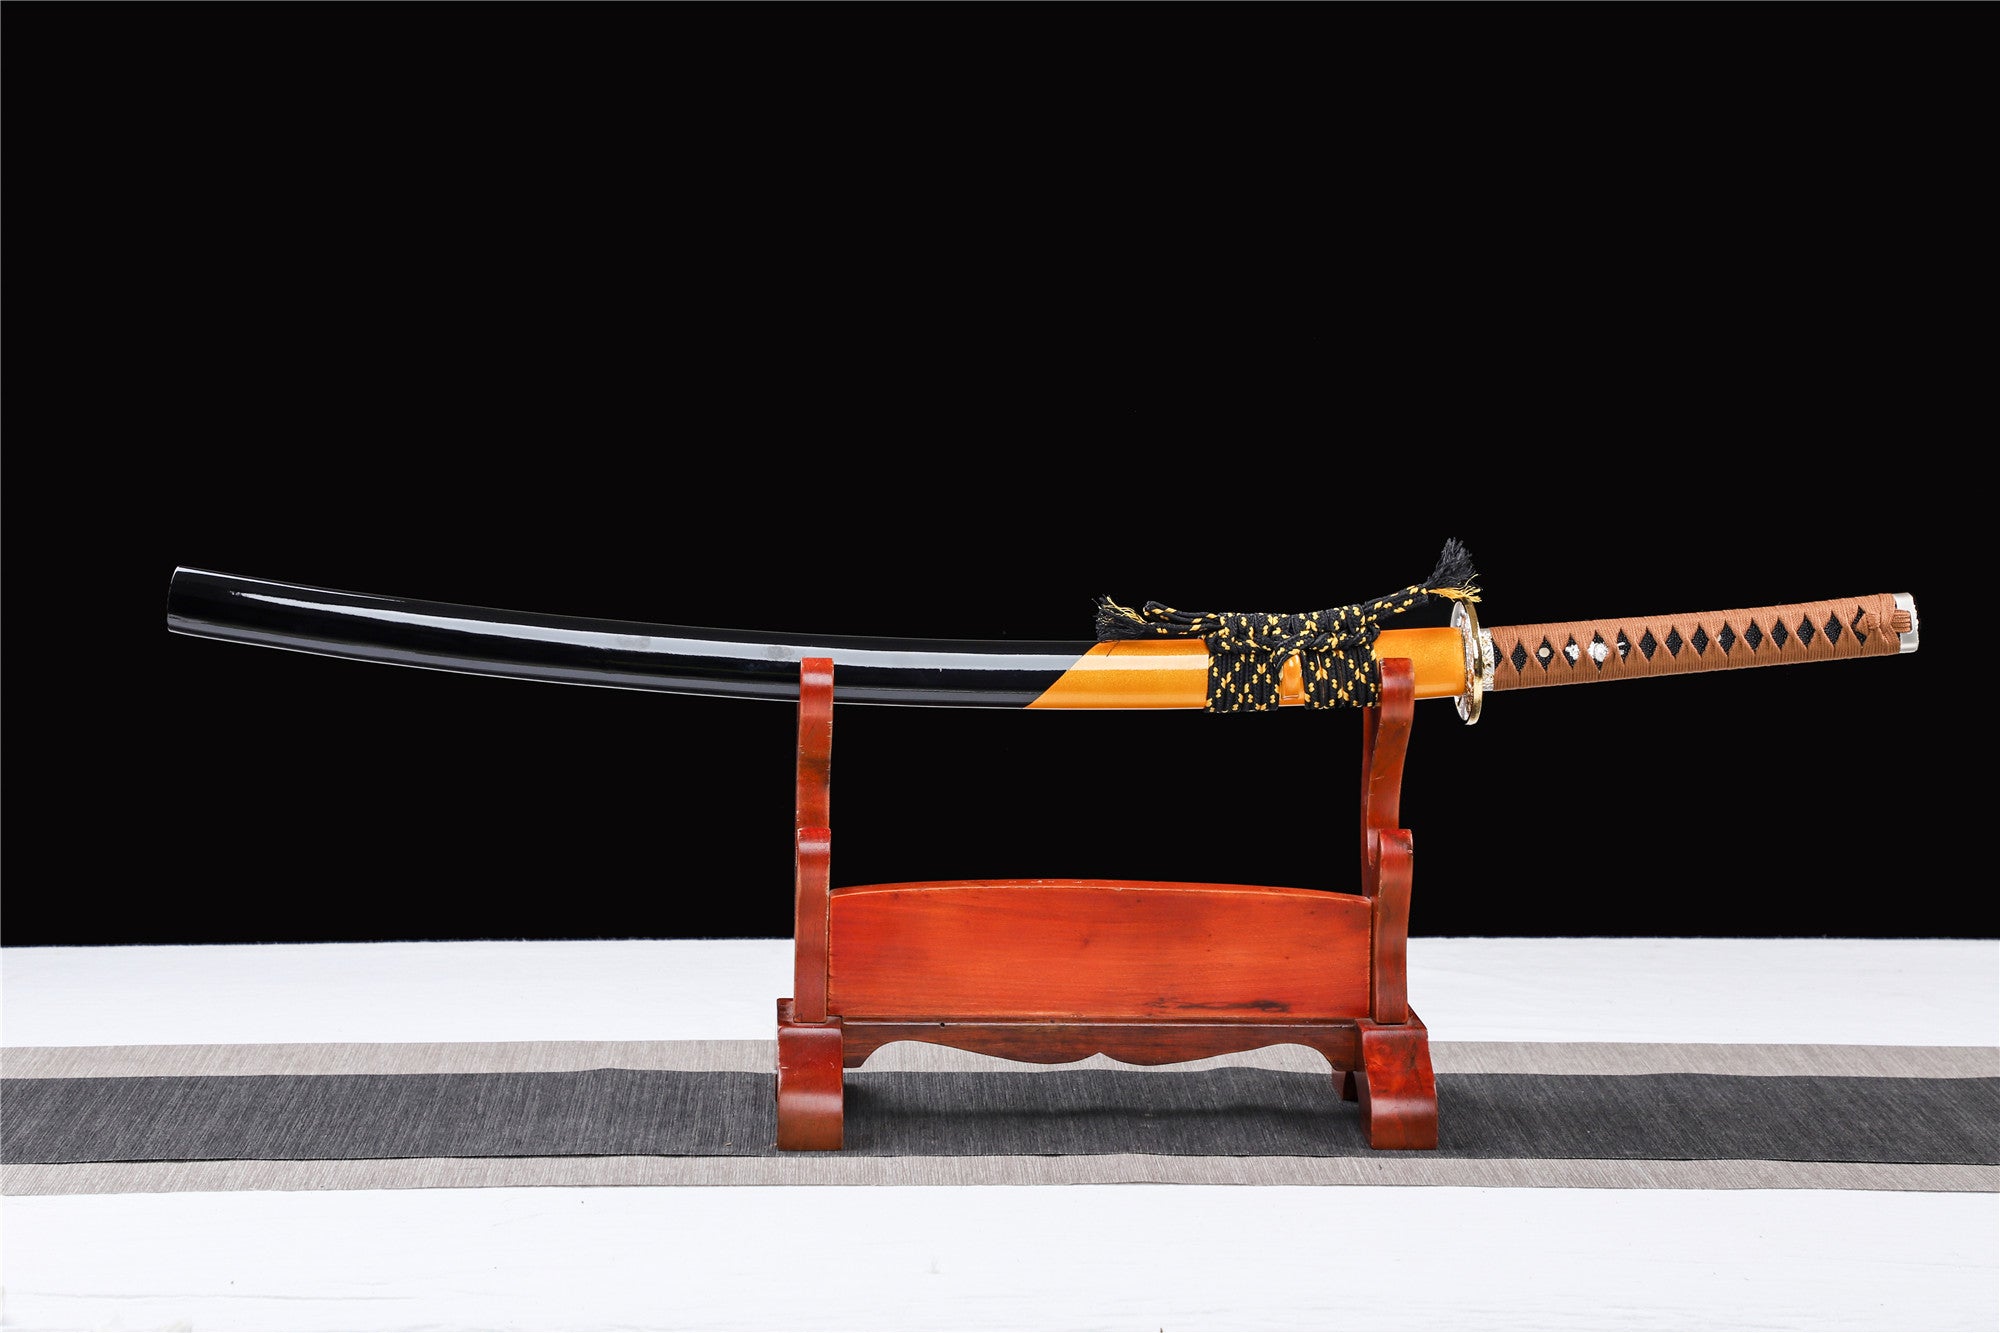 Zweifarbiges Katana, Schwarz und Gelb, Holz-Katana, japanisches Samurai-Schwert, handgefertigtes Holzschwert, Bambusklinge